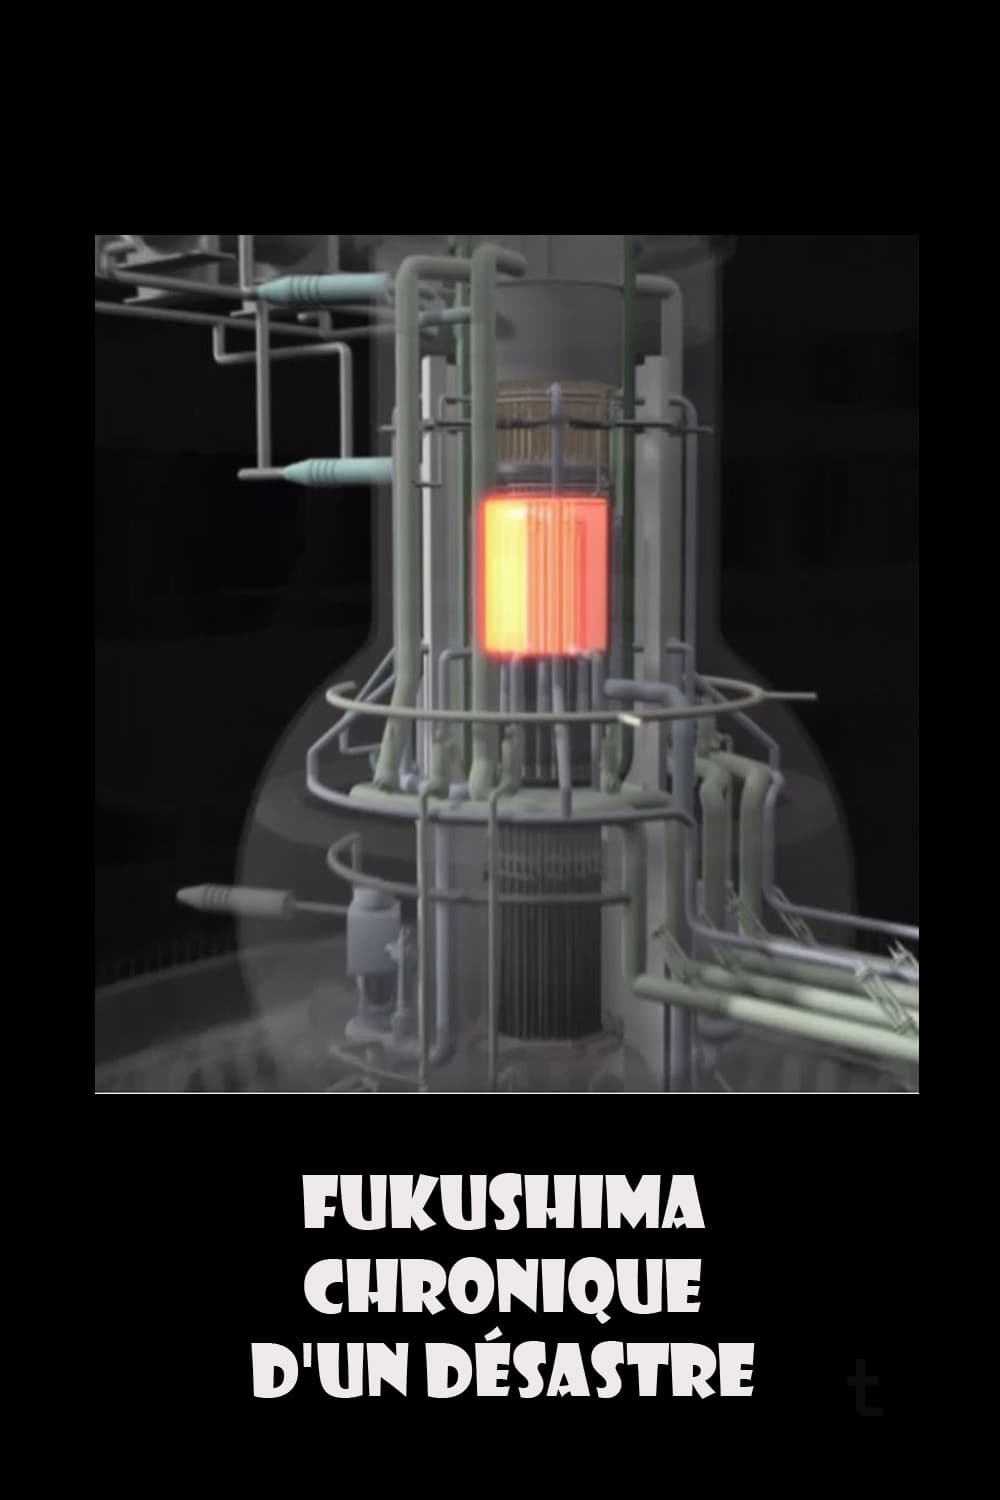 Fukushima, chronique d'un désastre